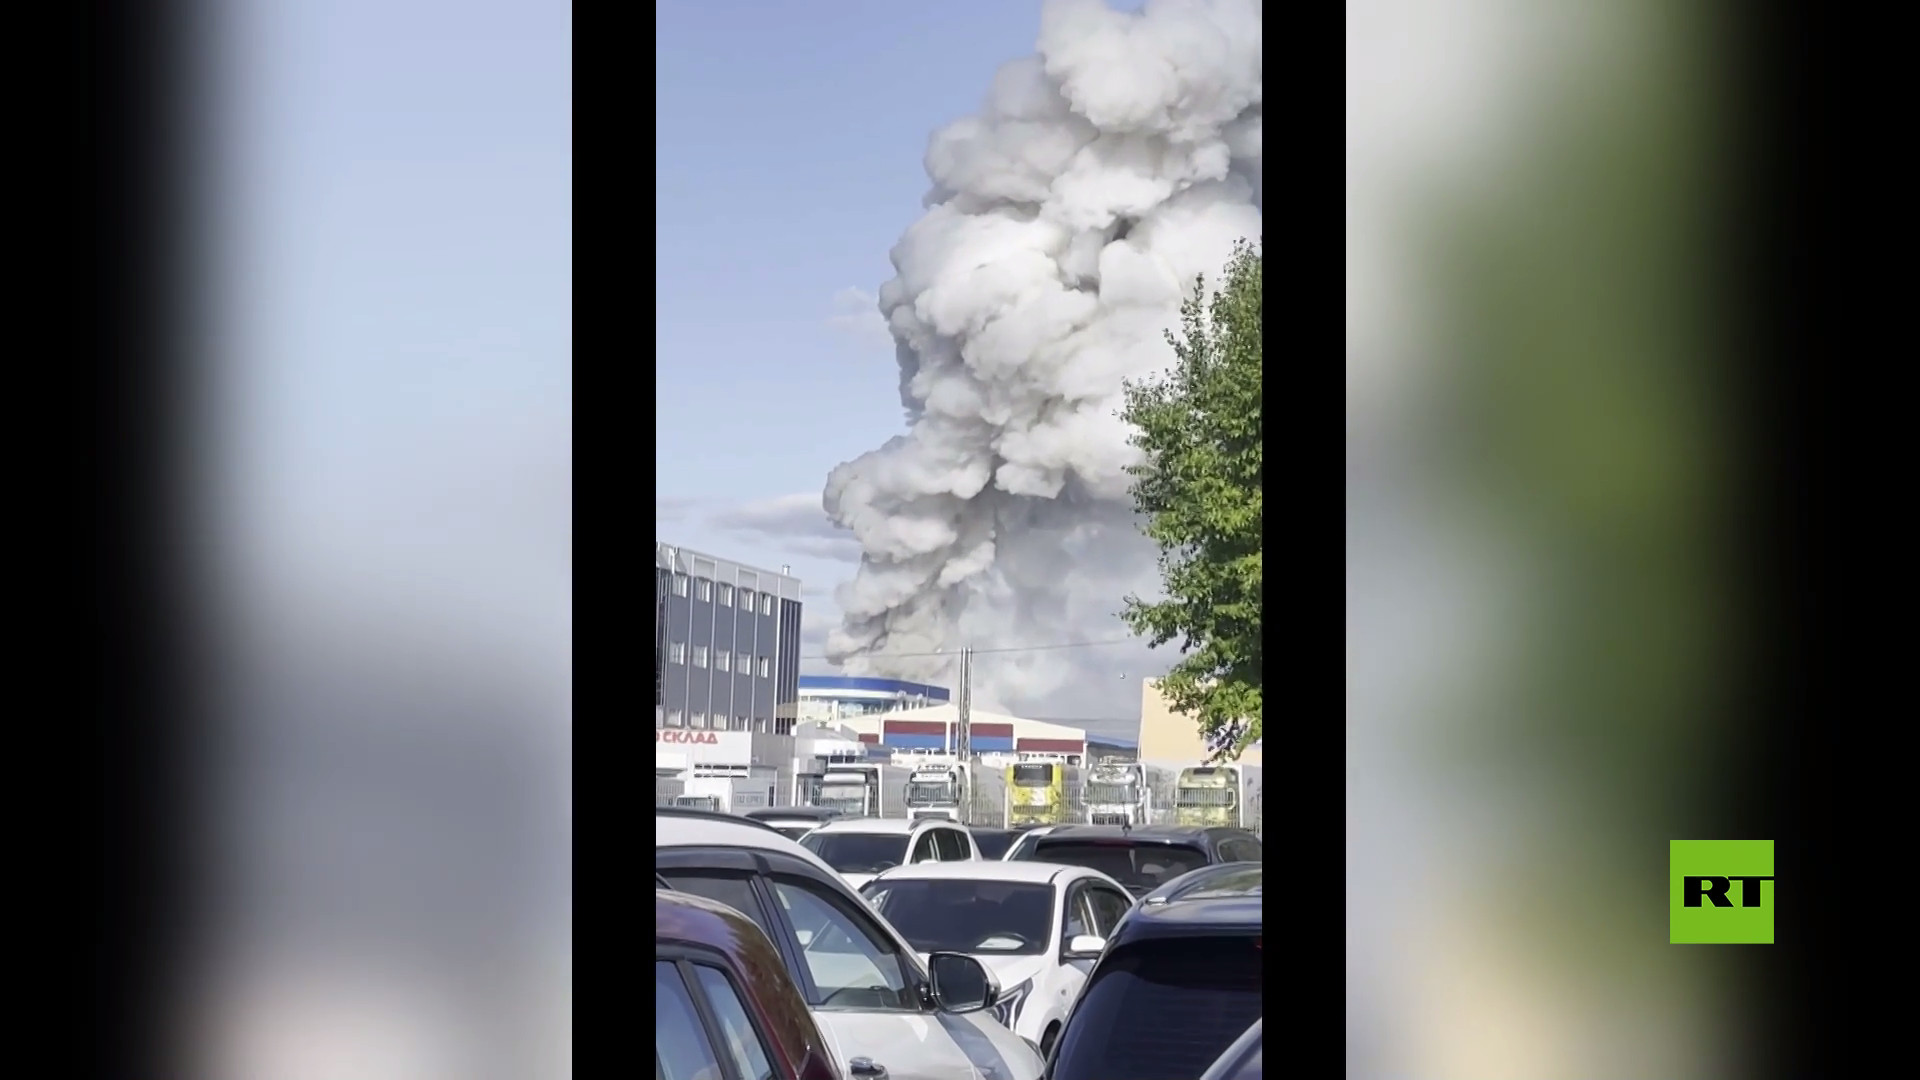 بالفيديو.. حريق وانفجارات في مستودع للمتفرقعات في كيميروفو الروسية